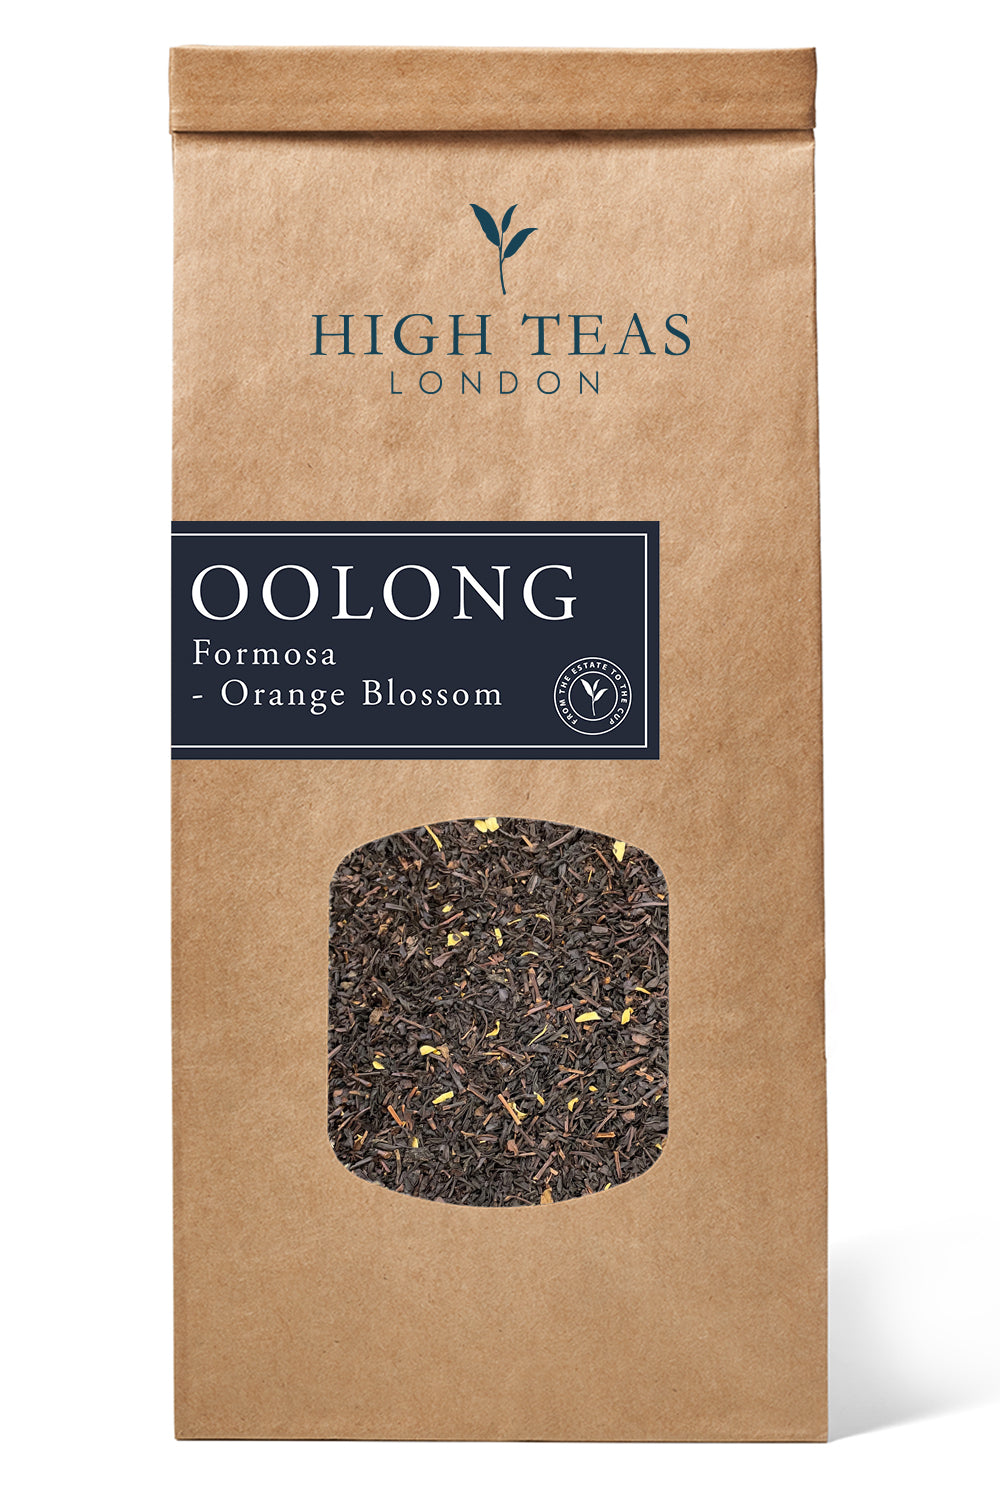 Formosa - Orange Blossom Oolong-250g-Loose Leaf Tea-High Teas